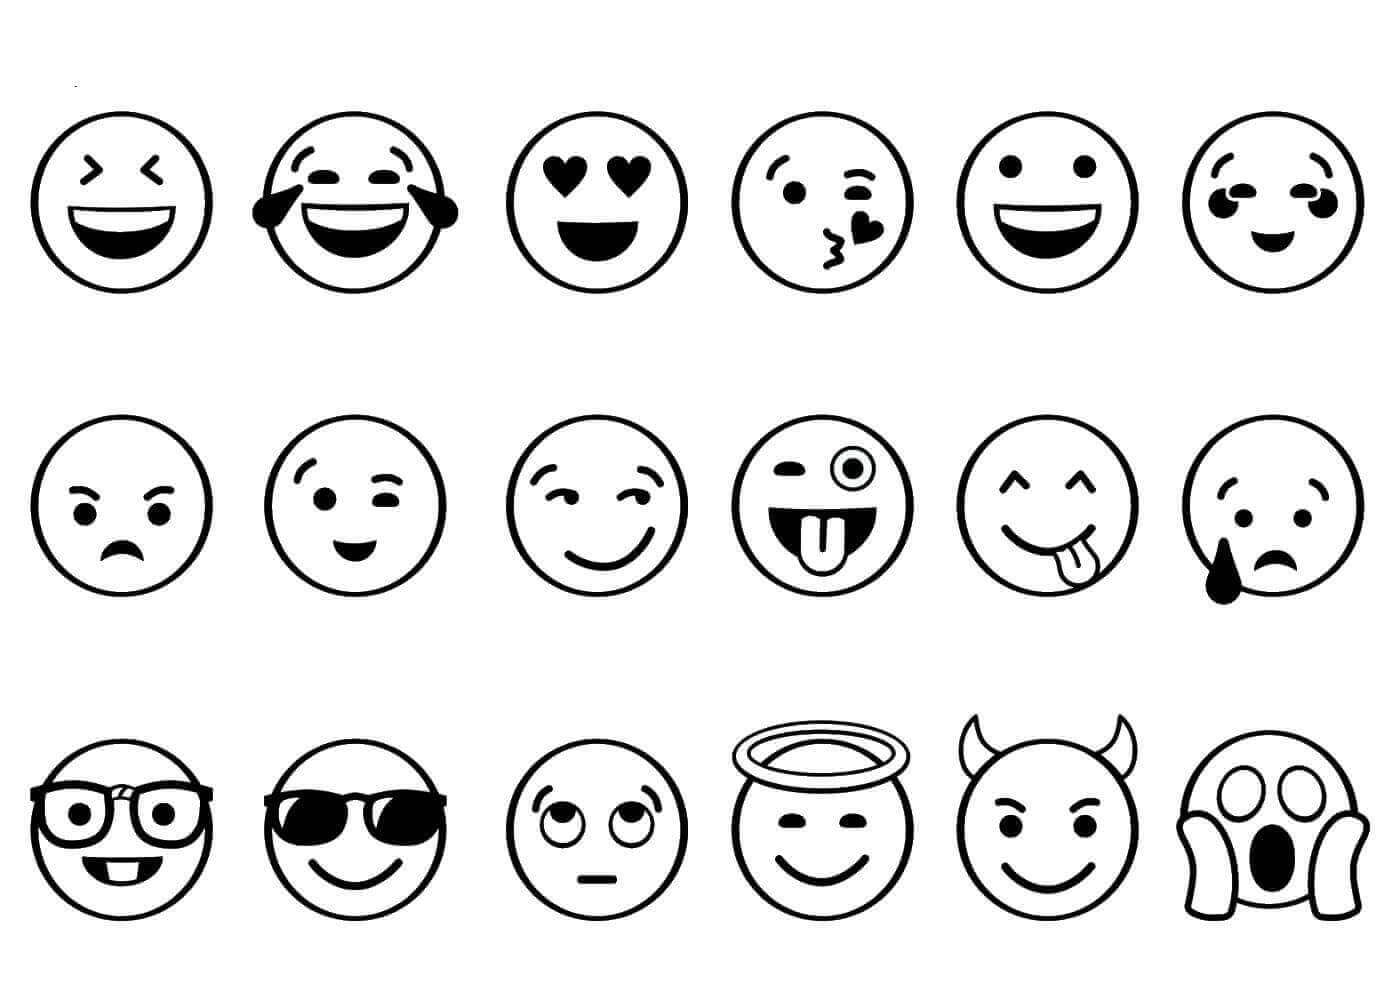 Printable Emojis To Color